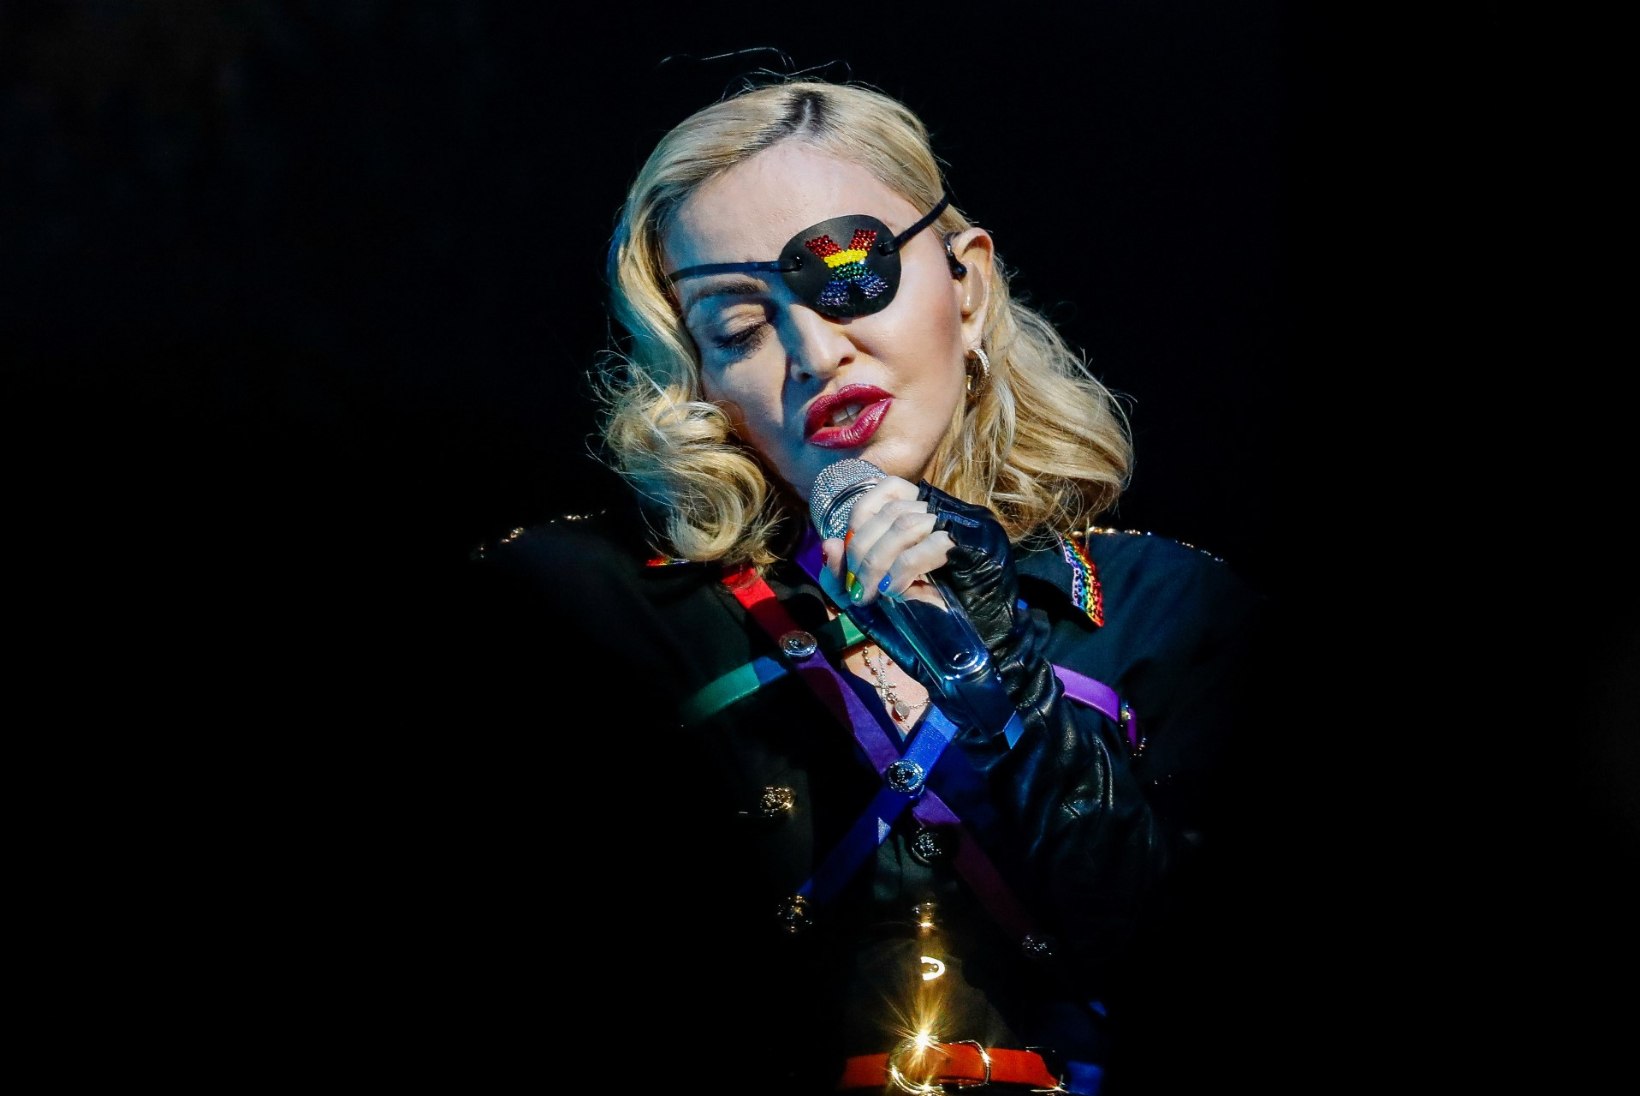 Madonna on katkine nukk, kes püsib koos vaid kleeplindi ja liimi abil